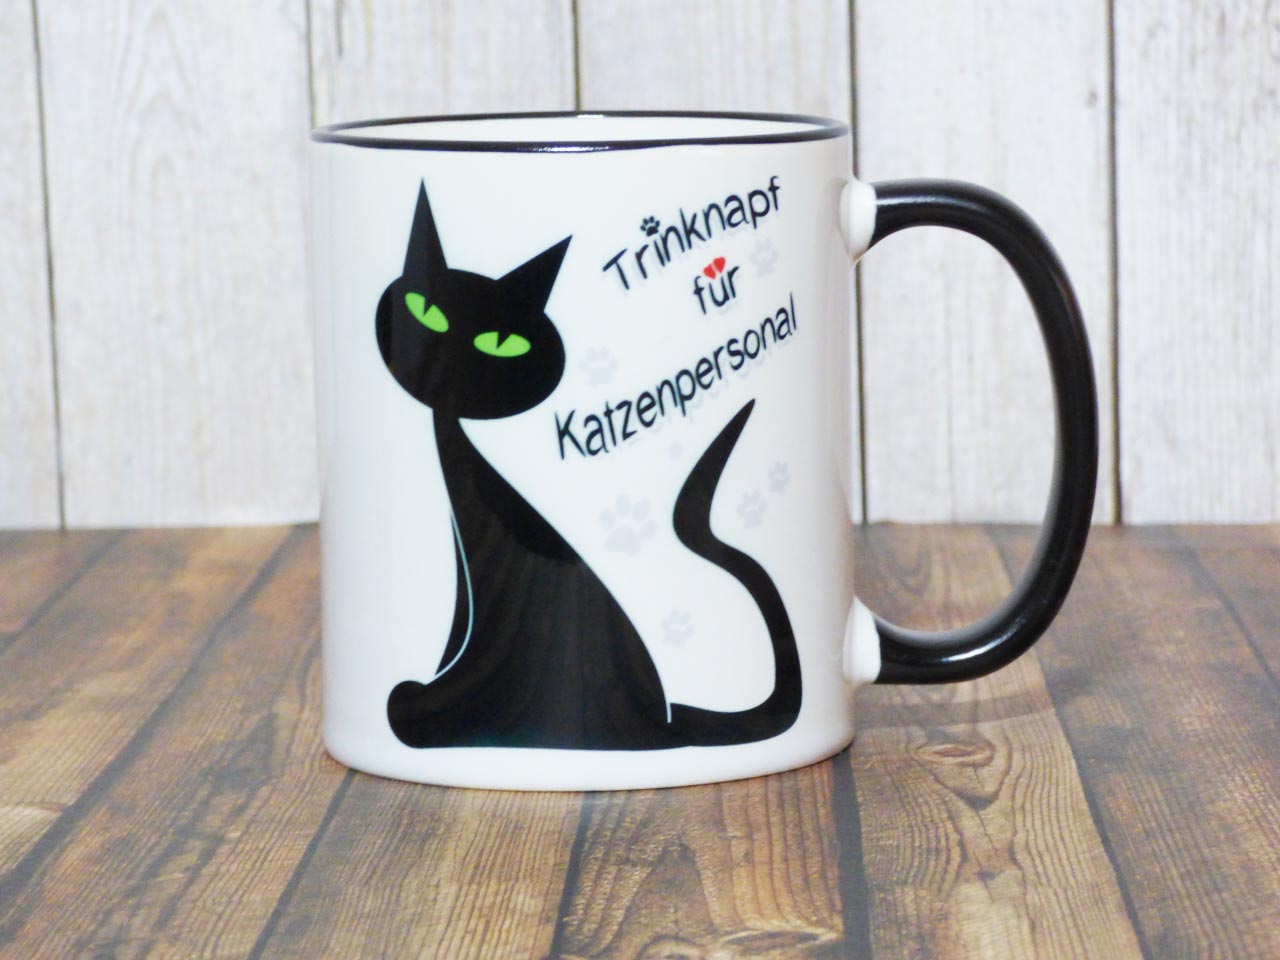 Spruch Lustig Katze Katzenbesitzer Beidseitiger Druck Samtpfote Tasse Kaffeetasse mit Katzenspruch Kätzchen